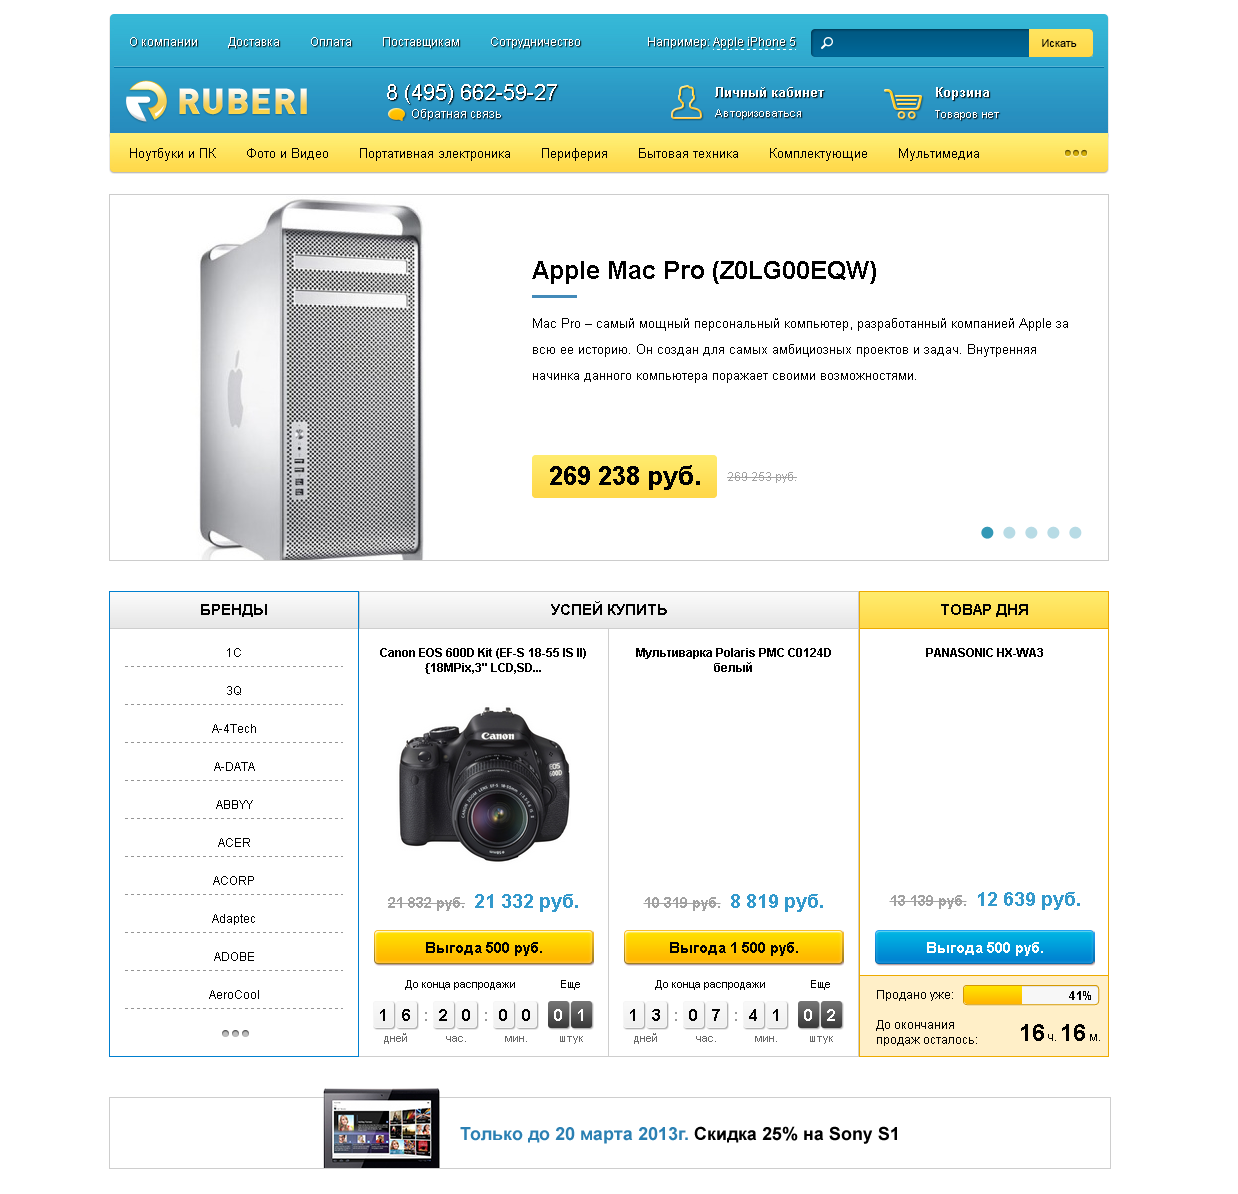 «ruberi» — интернет-магазин цифровой и бытовой техники.